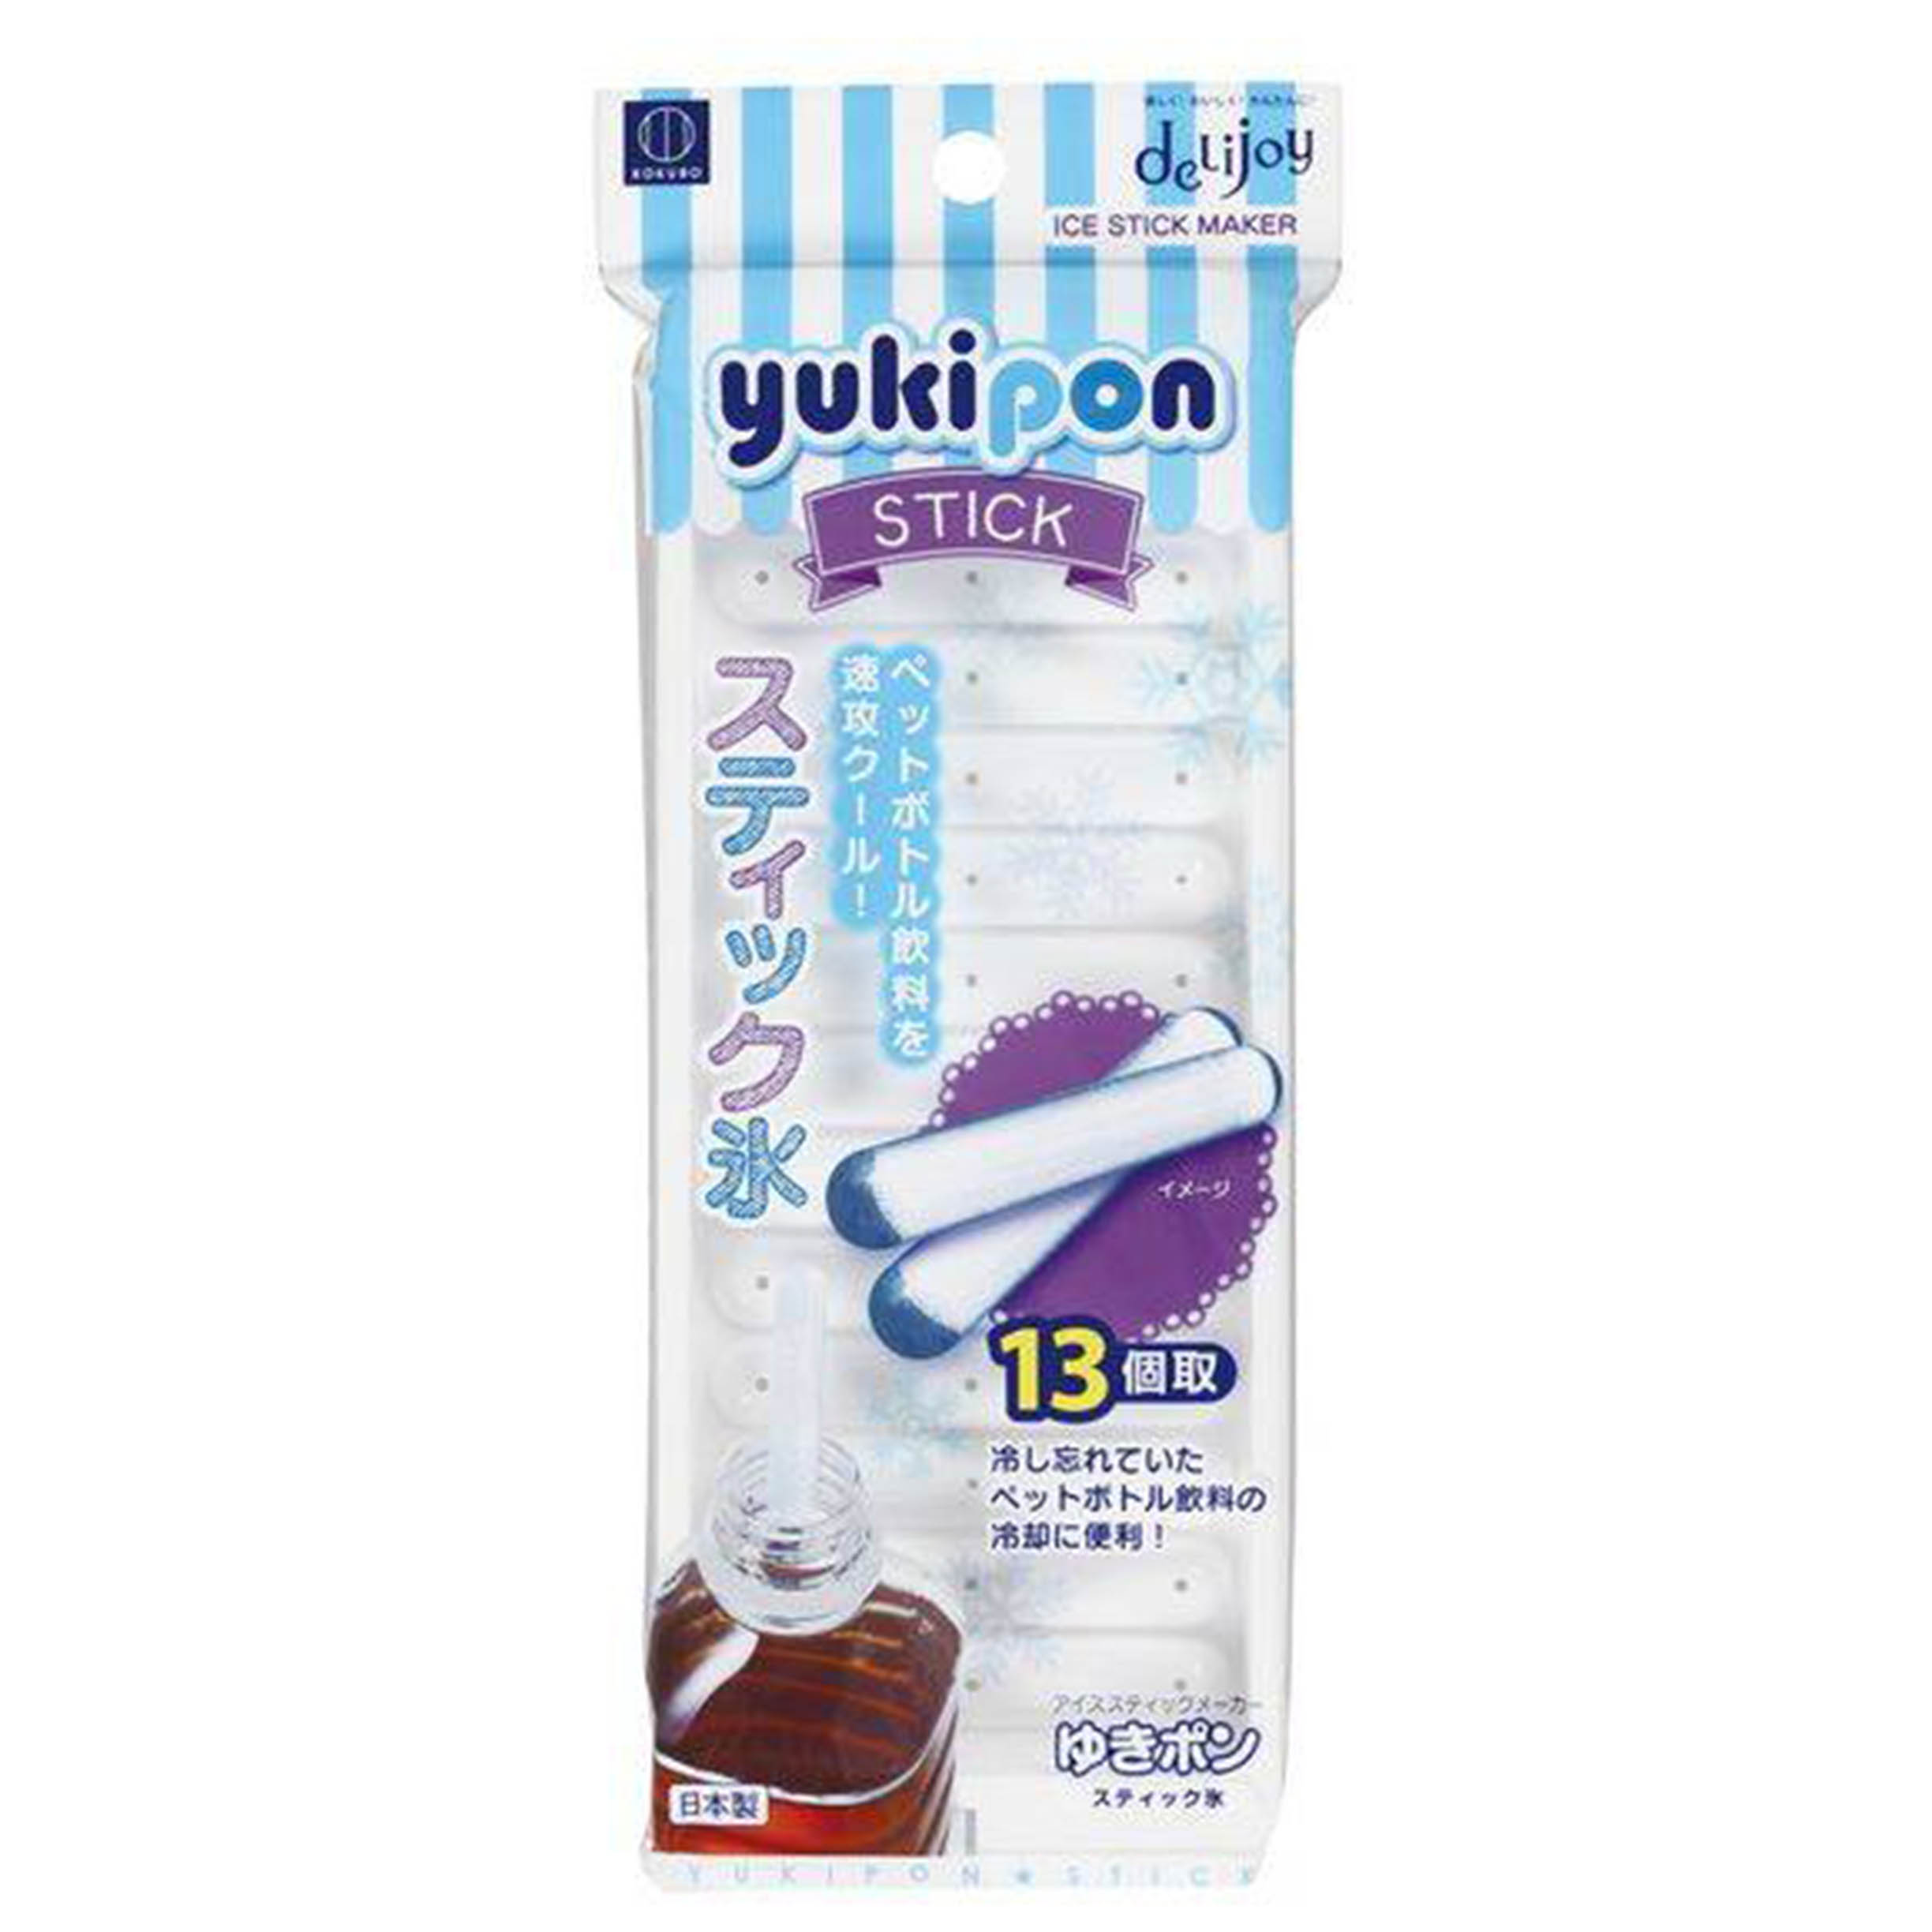 長條製冰盒 13格-yukipon STICK KK-215 小久保工業所 KOKUBO 日本製造進口